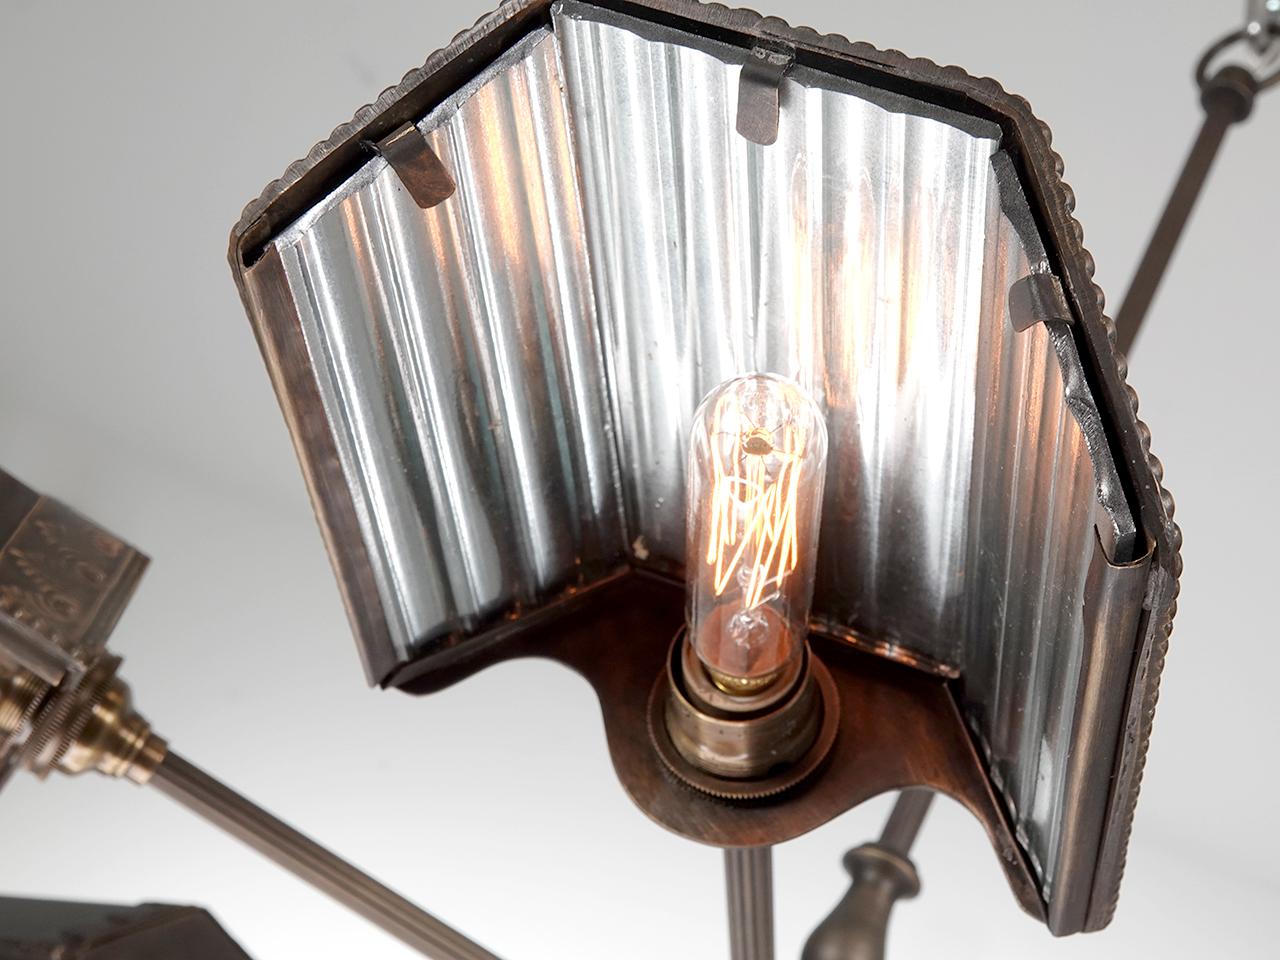 Nous nous sommes inspirés des premières lampes à réflecteur fabriquées par les sociétés Frink et Wheeler. Il y a plus de 100 ans, on pouvait trouver ces petits abat-jour en miroir le long des scènes de Vaudeville et on les appelait les 